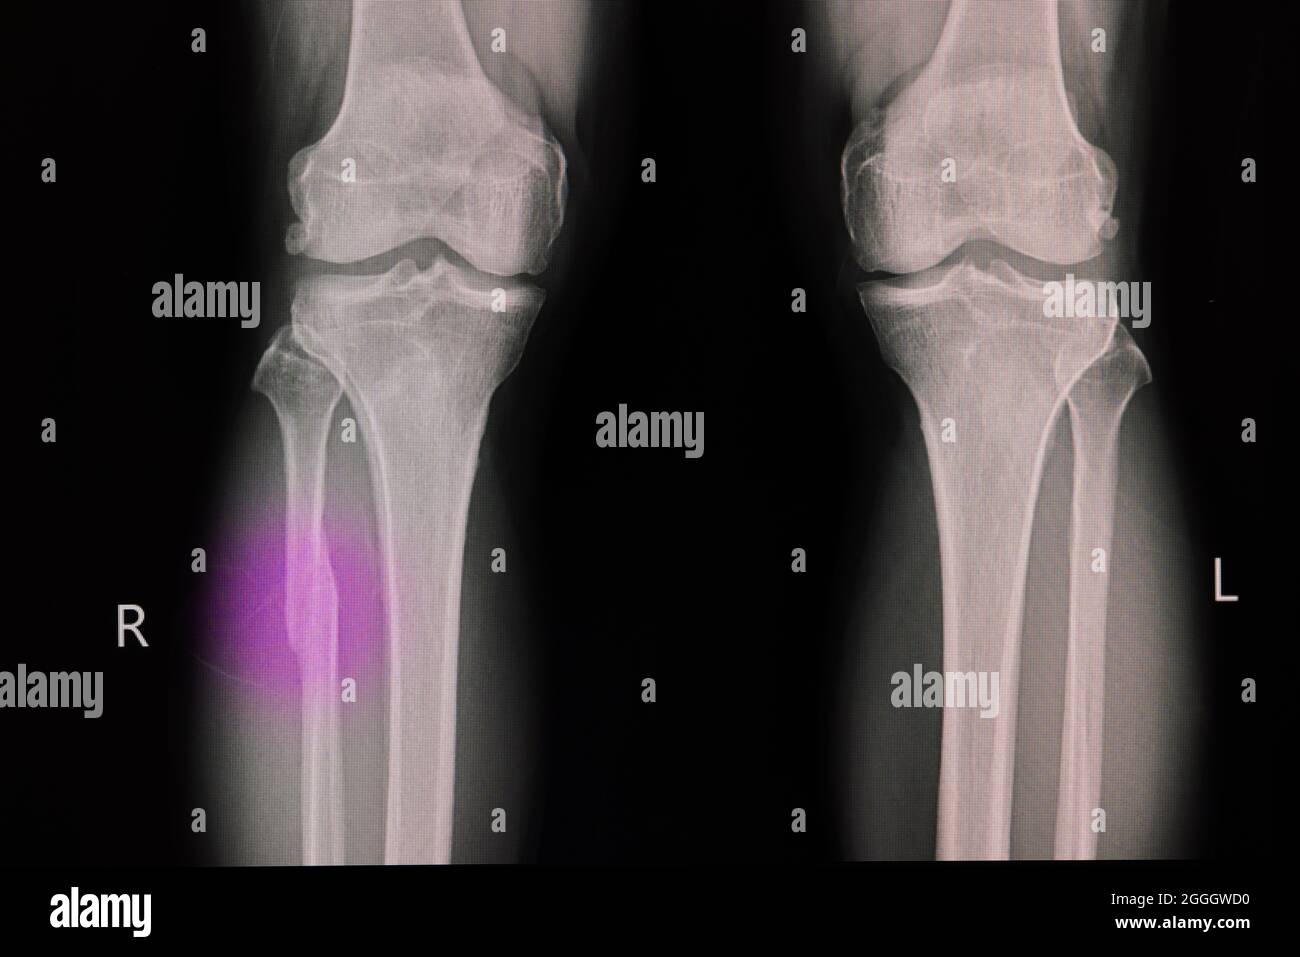 Film radiographique d'un genou d'un patient présentant un péroné proximal fracturé. Fracture osseuse de la jambe. Banque D'Images